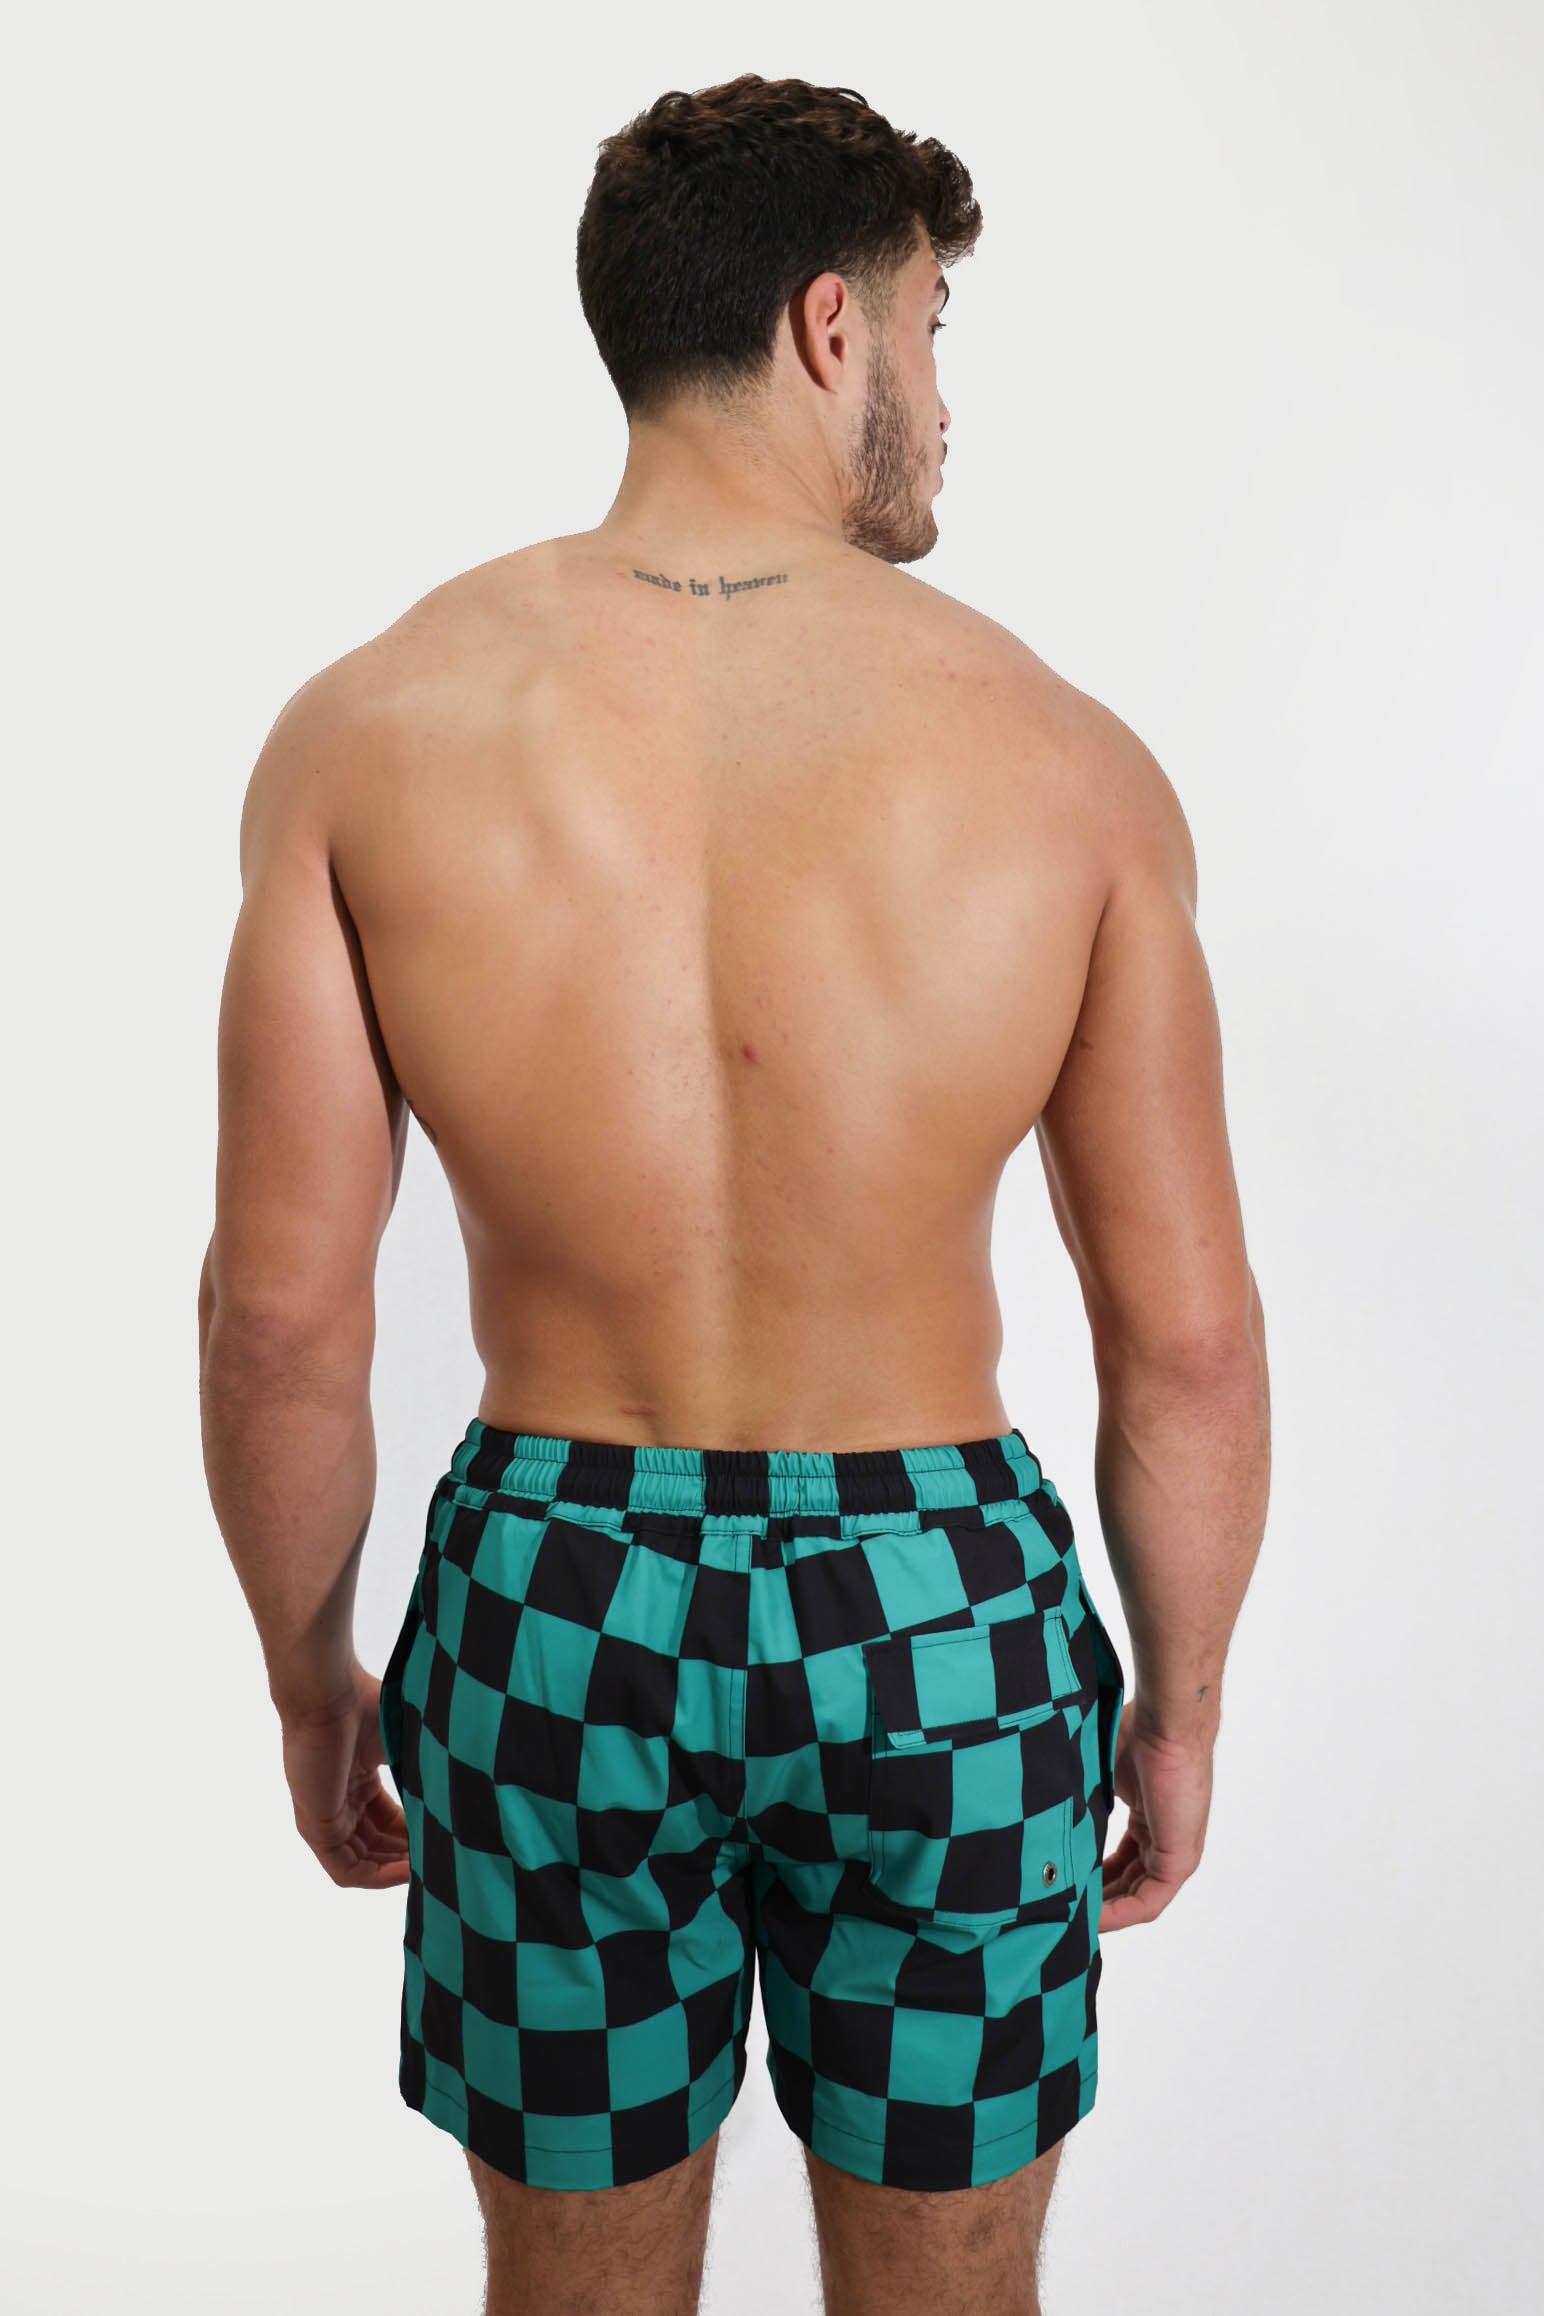 Checkered Shorts 4.5"